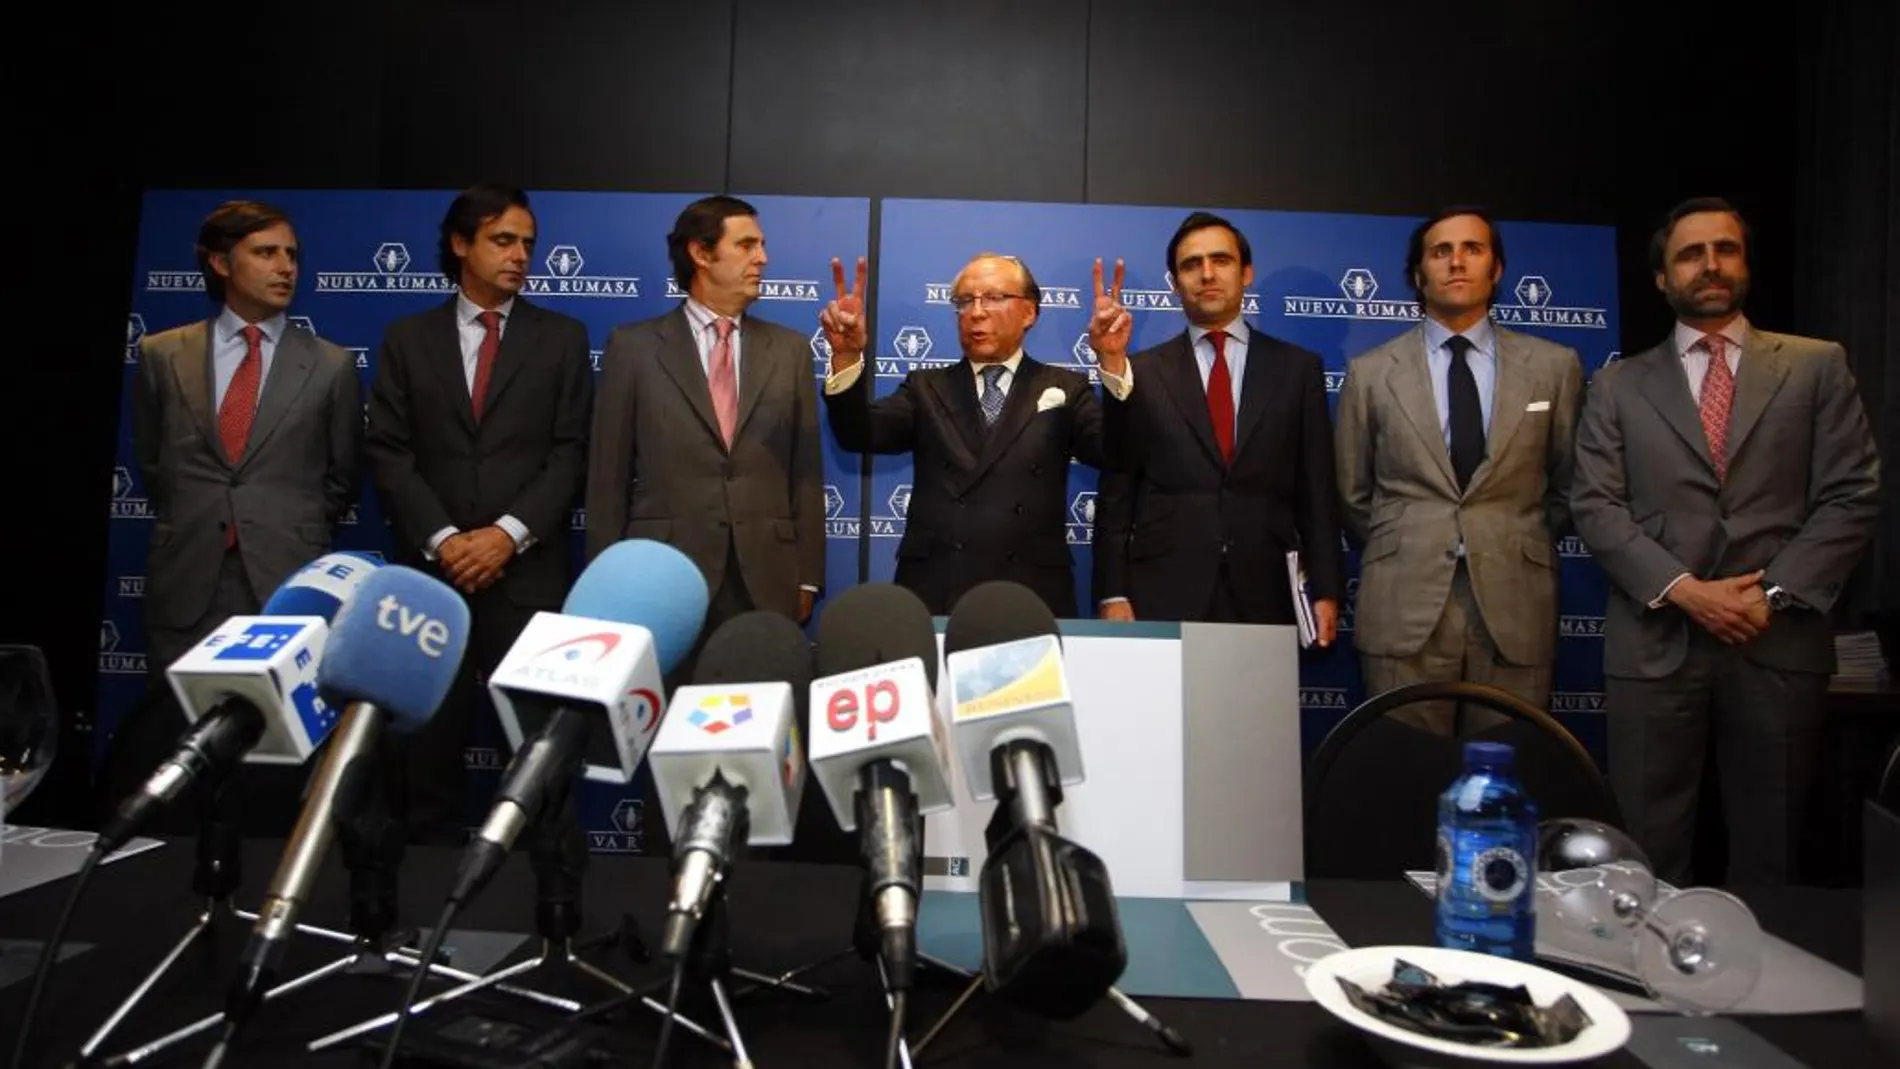 José María Ruiz Mateos y sus seis hijos implicados